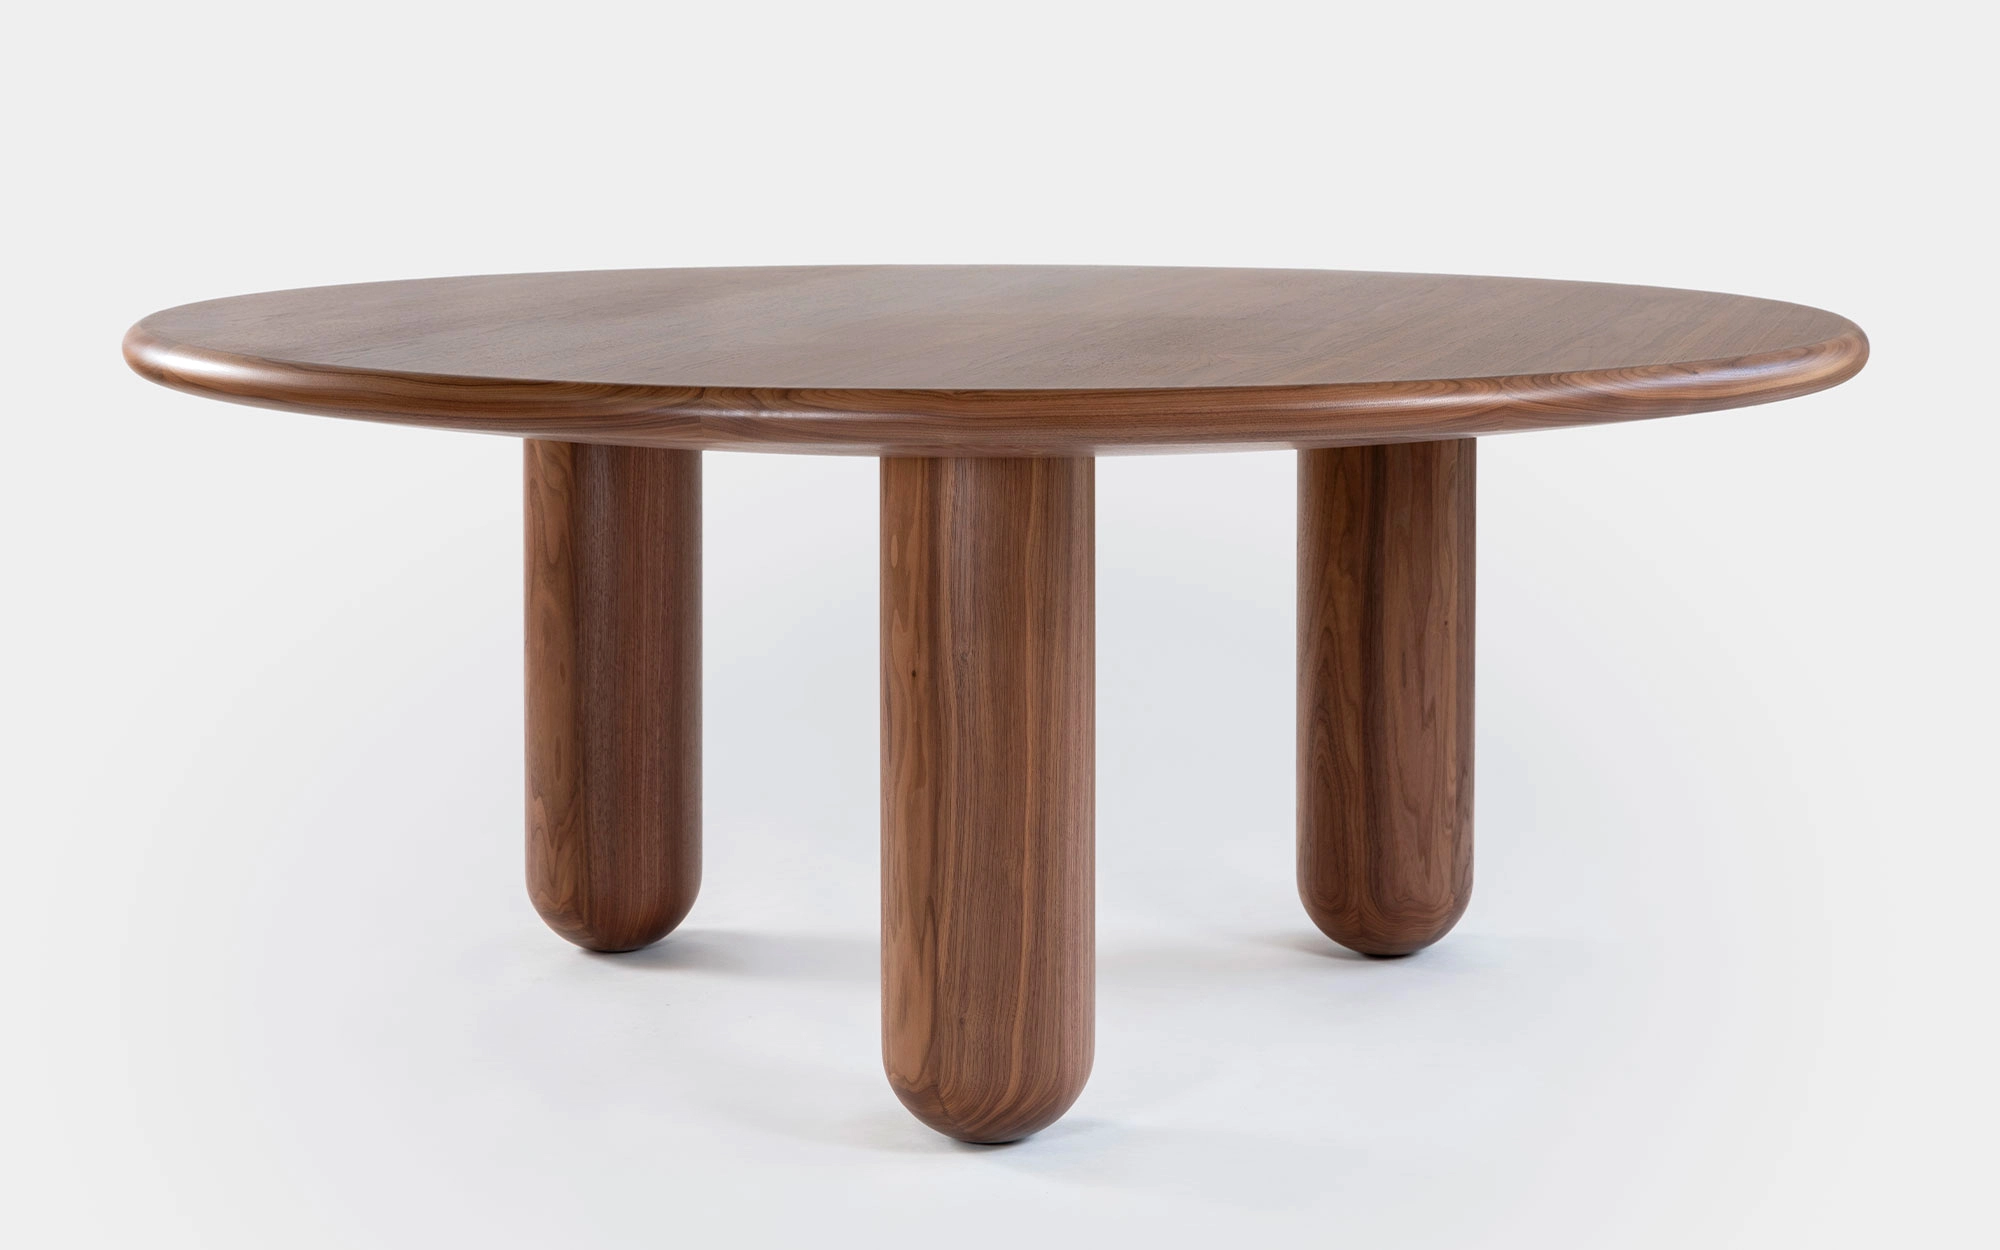 Organism table - Jaime Hayon - Coffee table - Galerie kreo